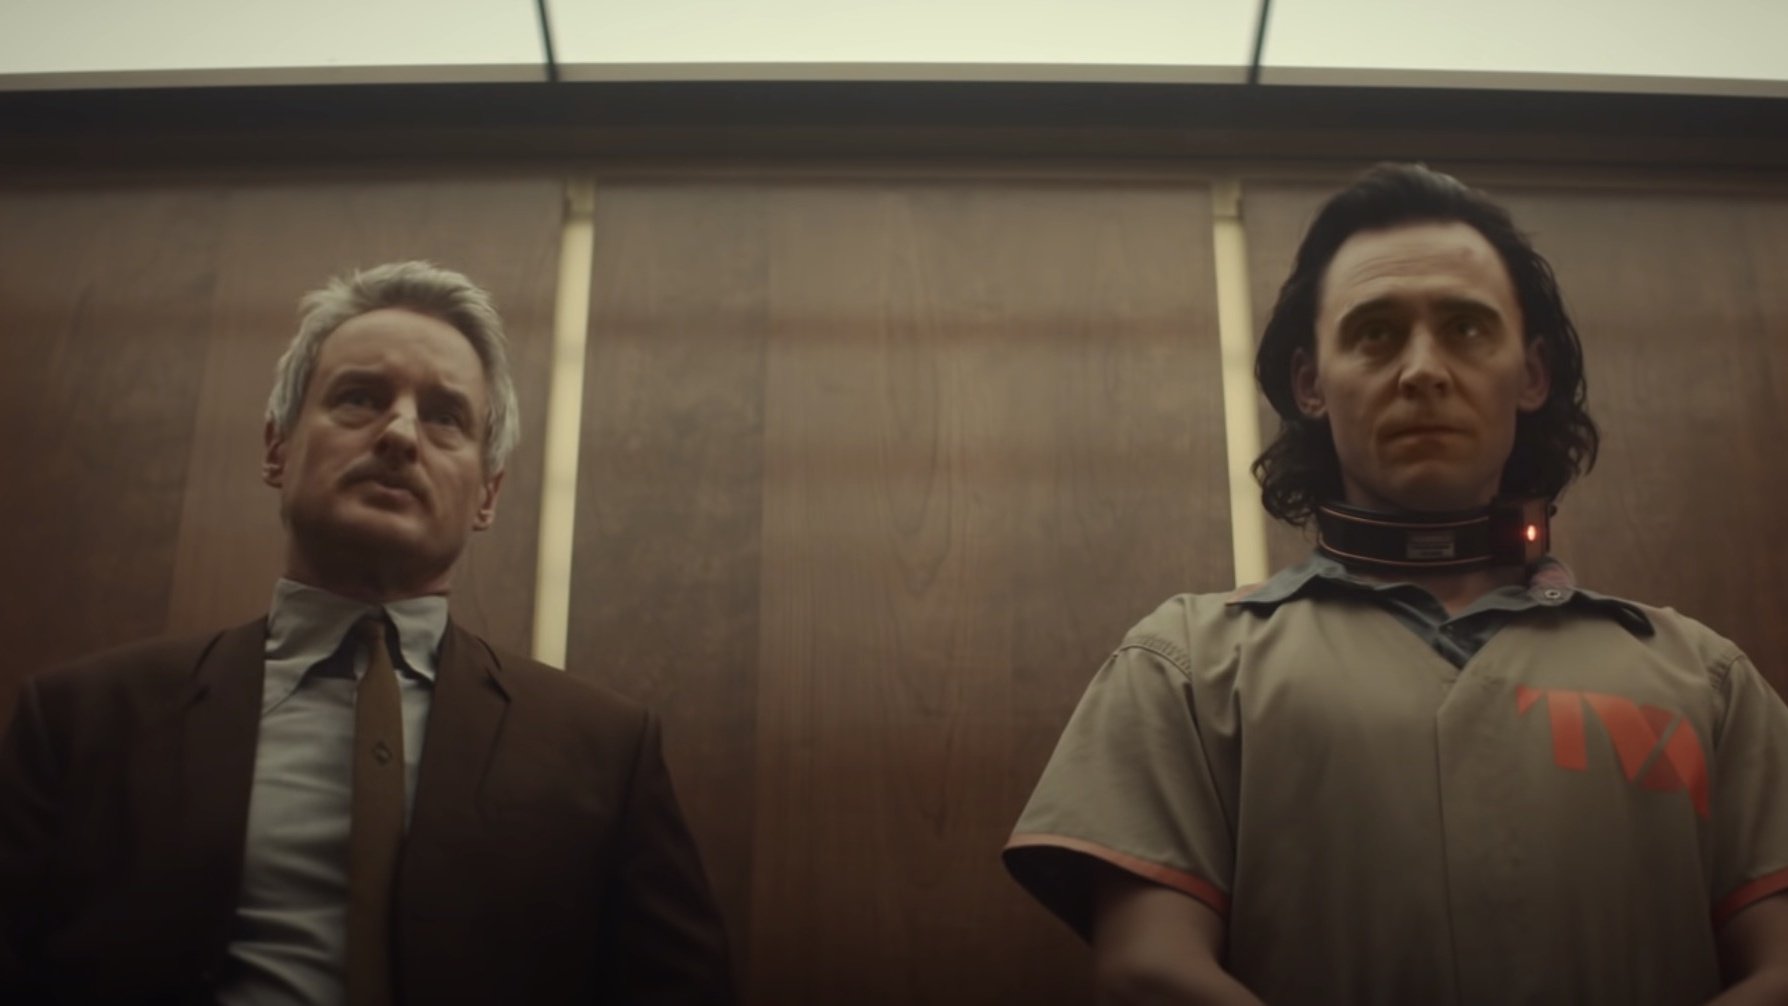 Mobius interpretado por Owen Wilson y Loki interpretado por Tom Hiddleston estaban en un ascensor.